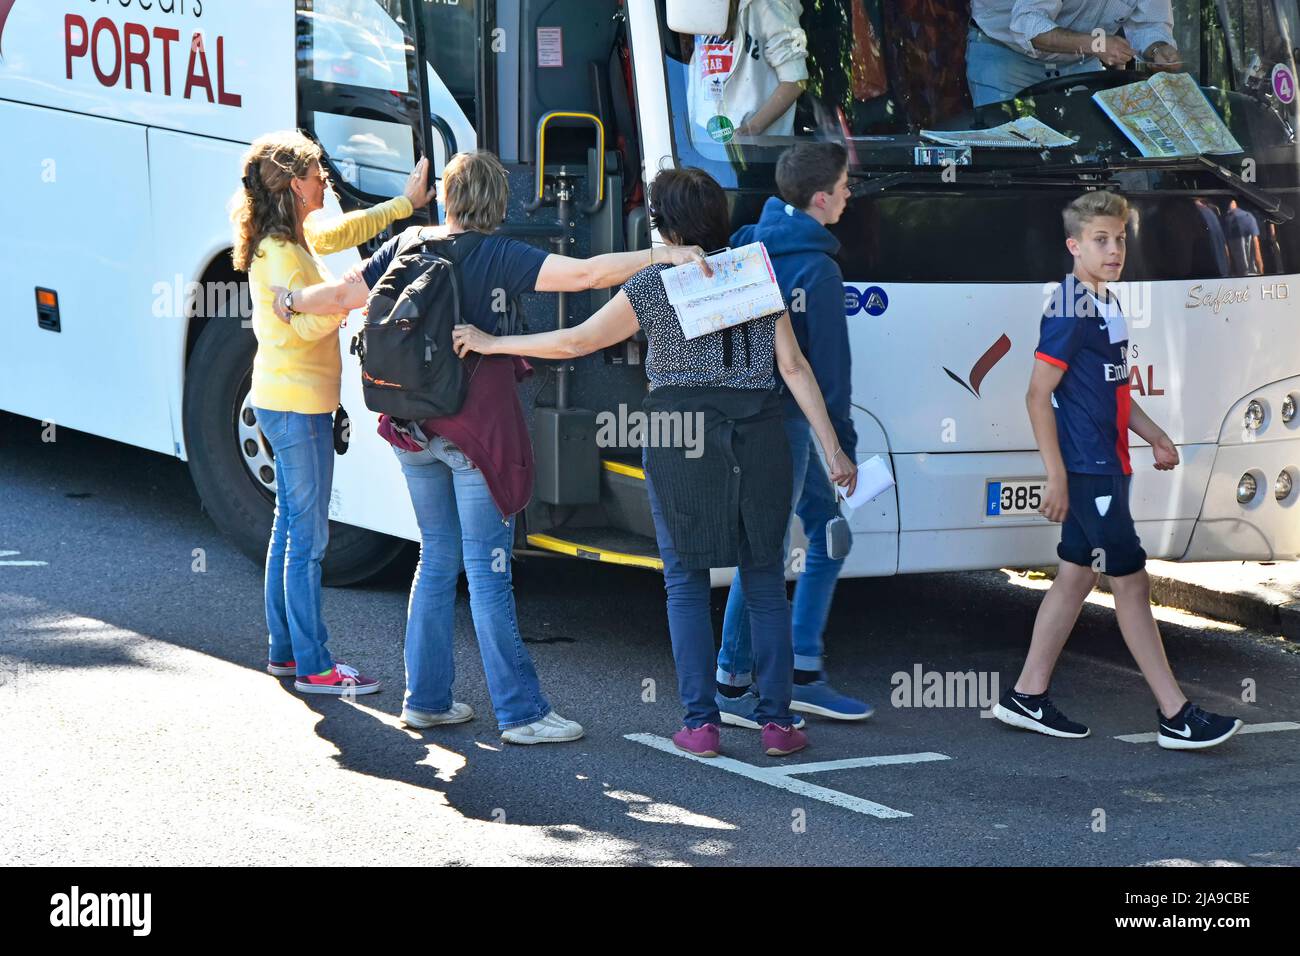 Les enseignants et les minders relient les bras pour la protection des élèves sortie sûre à gauche conduire l'autocar français dans le parking en bord de route Bay Park Lane Hyde Park Londres Angleterre Royaume-Uni Banque D'Images